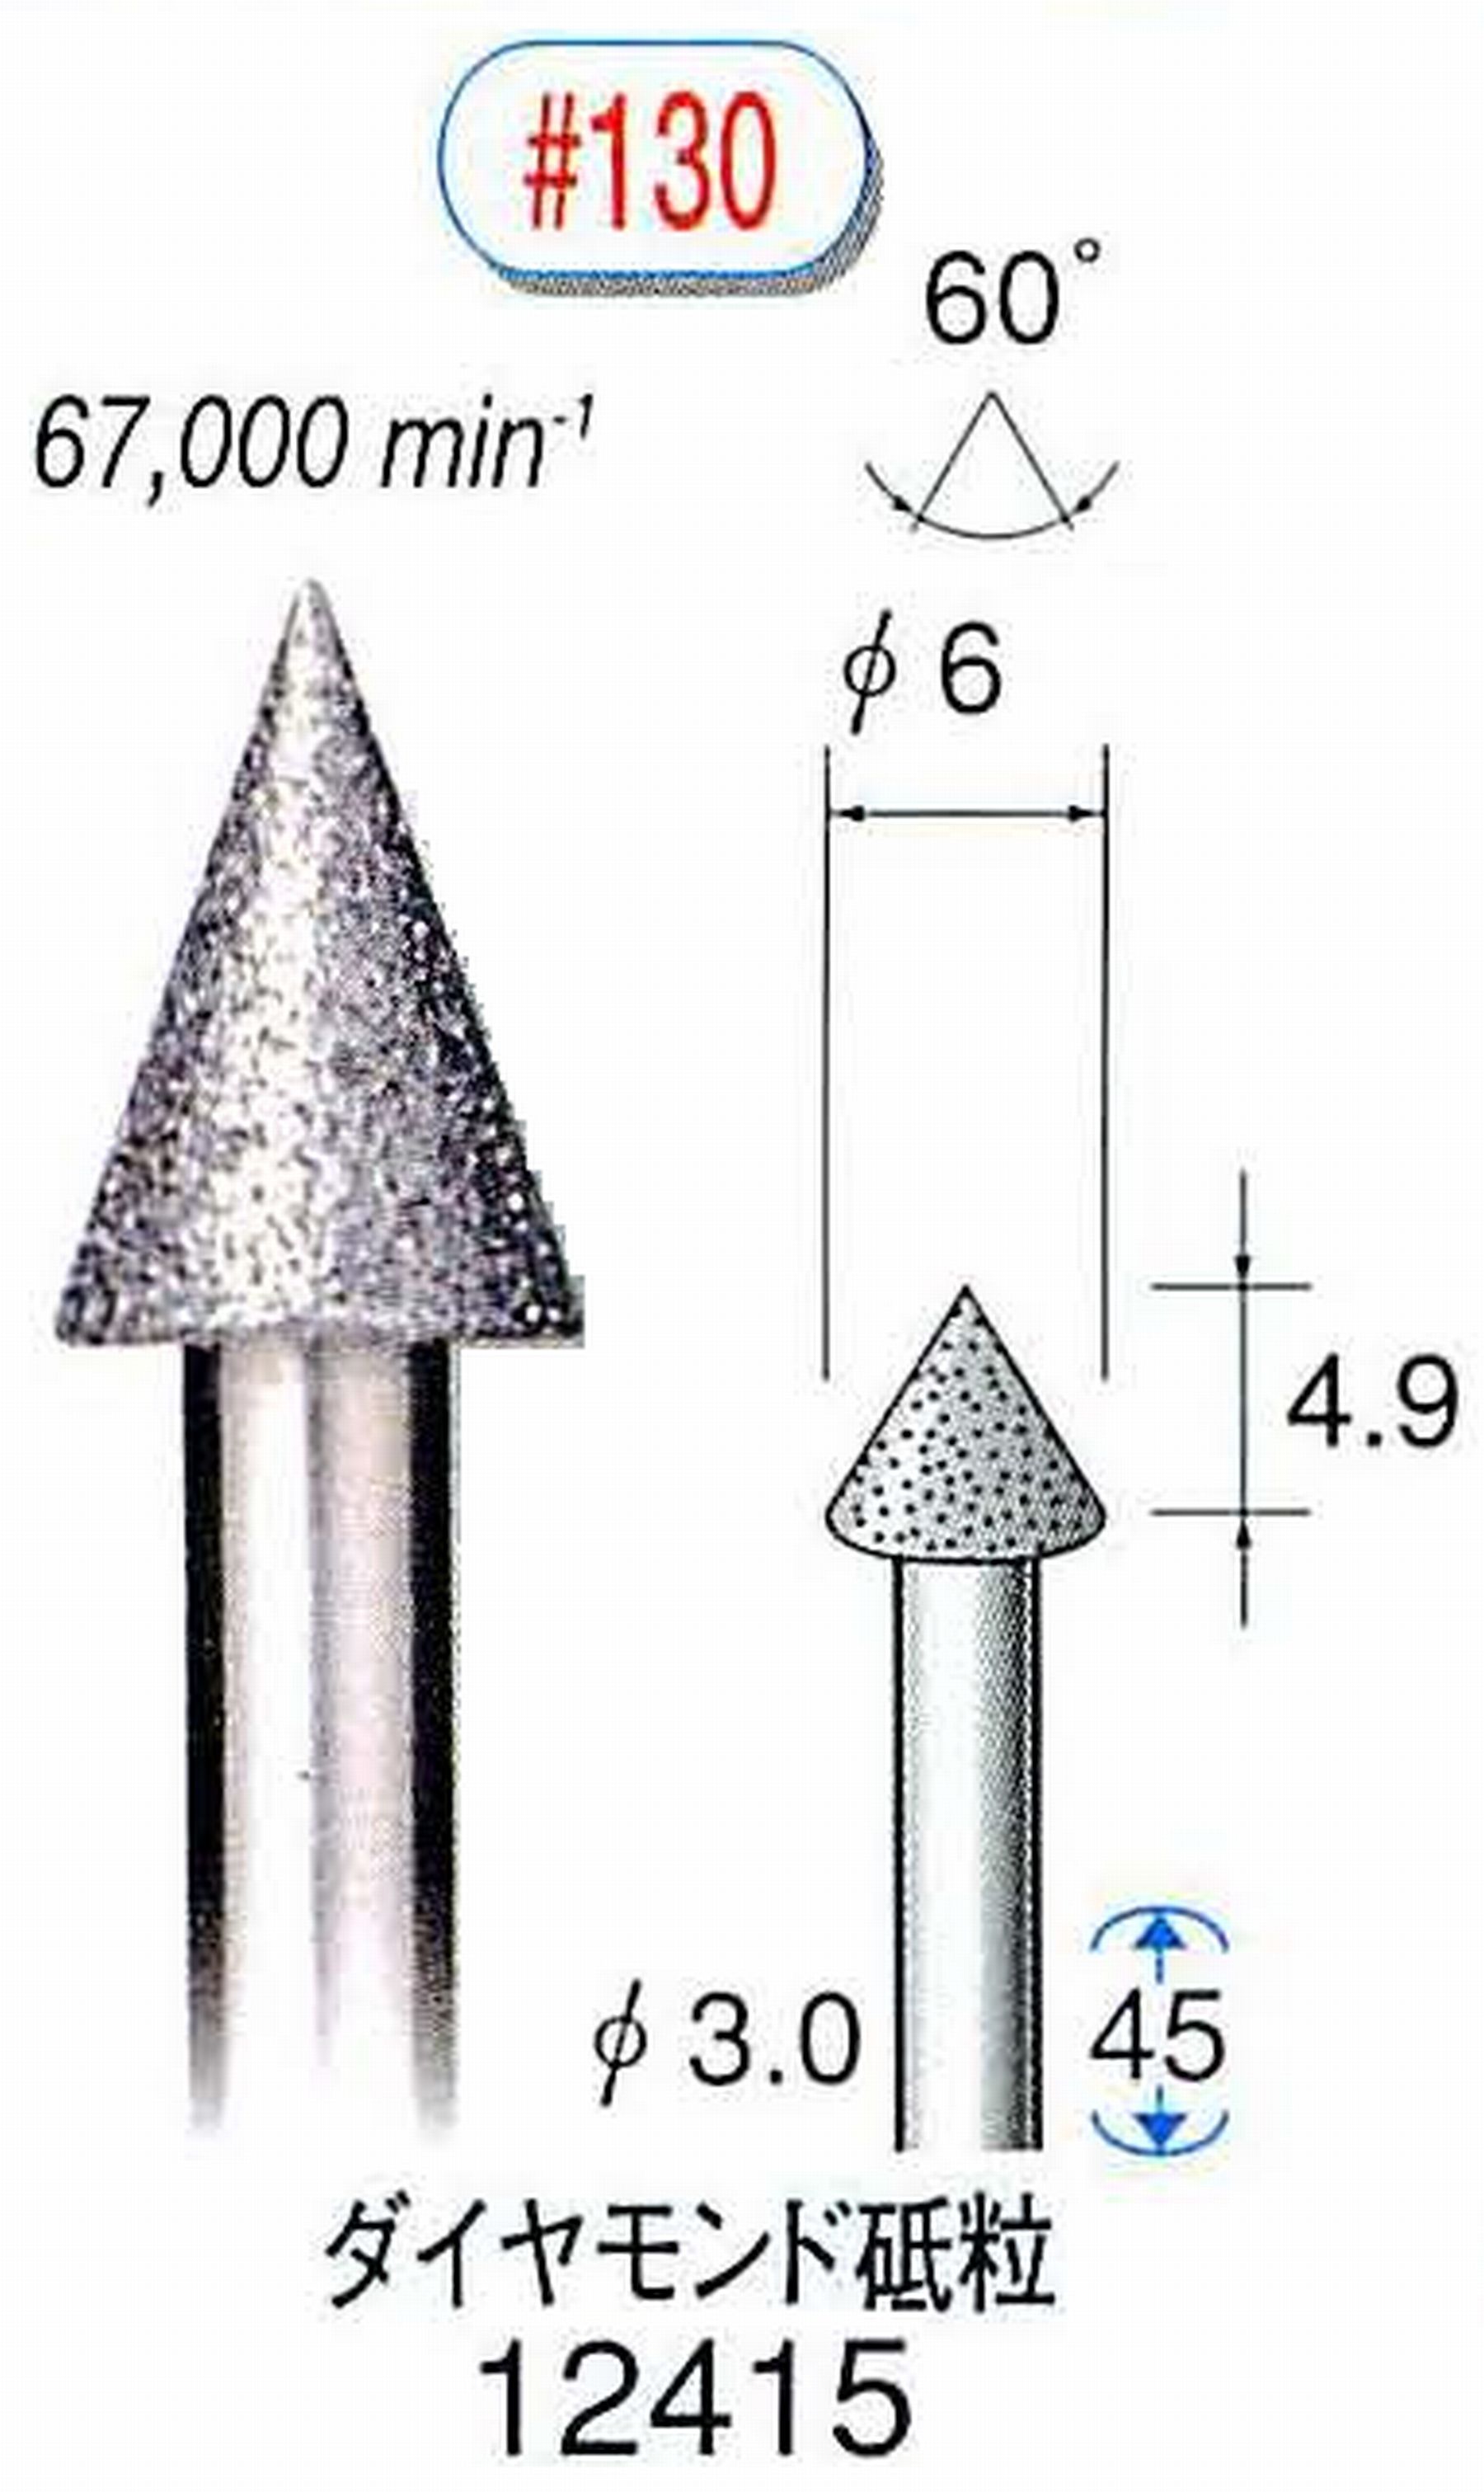 ナカニシ/NAKANISHI 電着ダイヤモンド ダイヤモンド砥粒 軸径(シャンク)φ3.0mm 12415